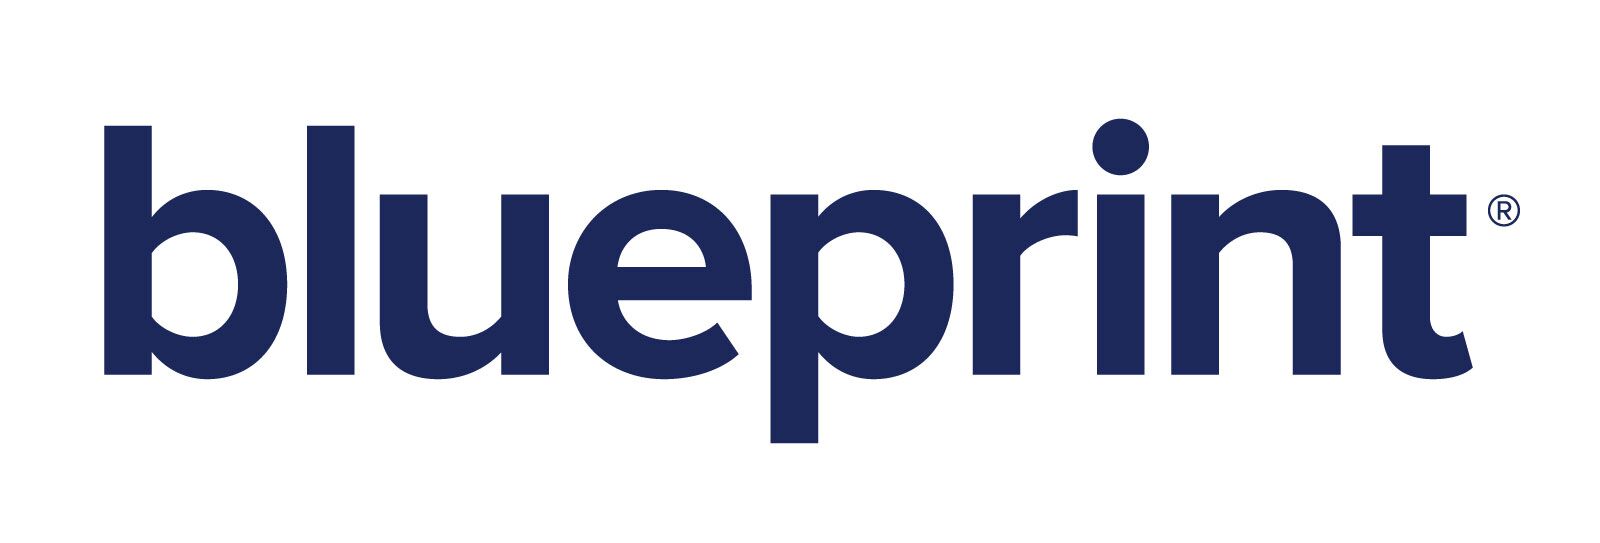 Blueprint Logo